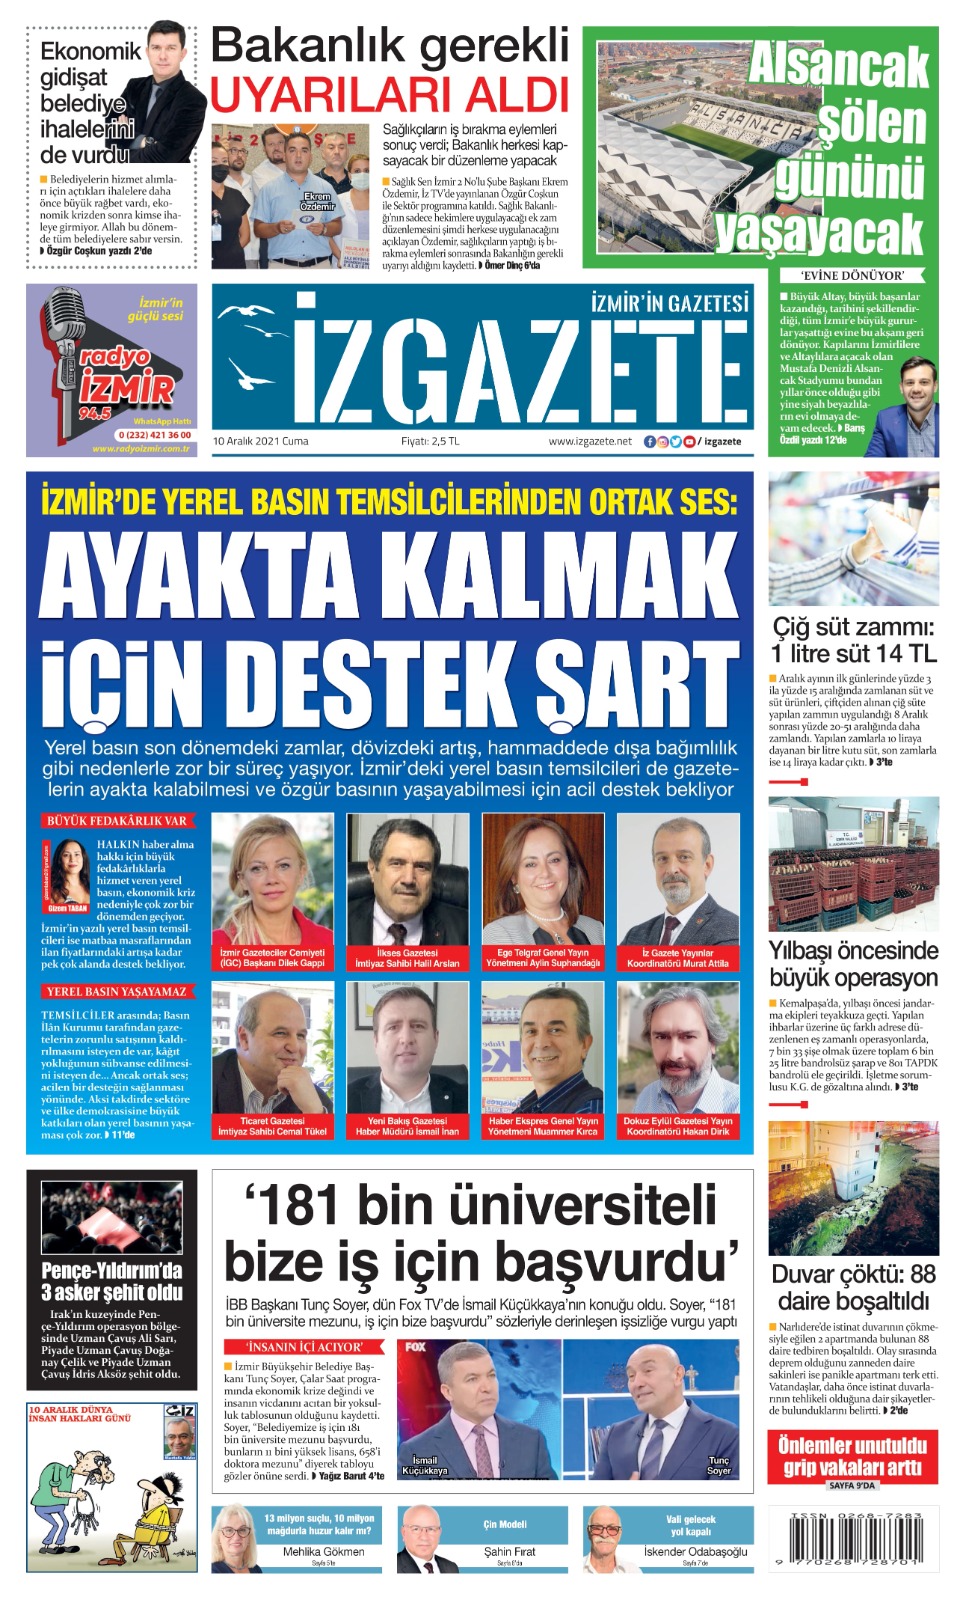 İz Gazete - İzmir'in Gazetesi - 10.12.2021 Manşeti